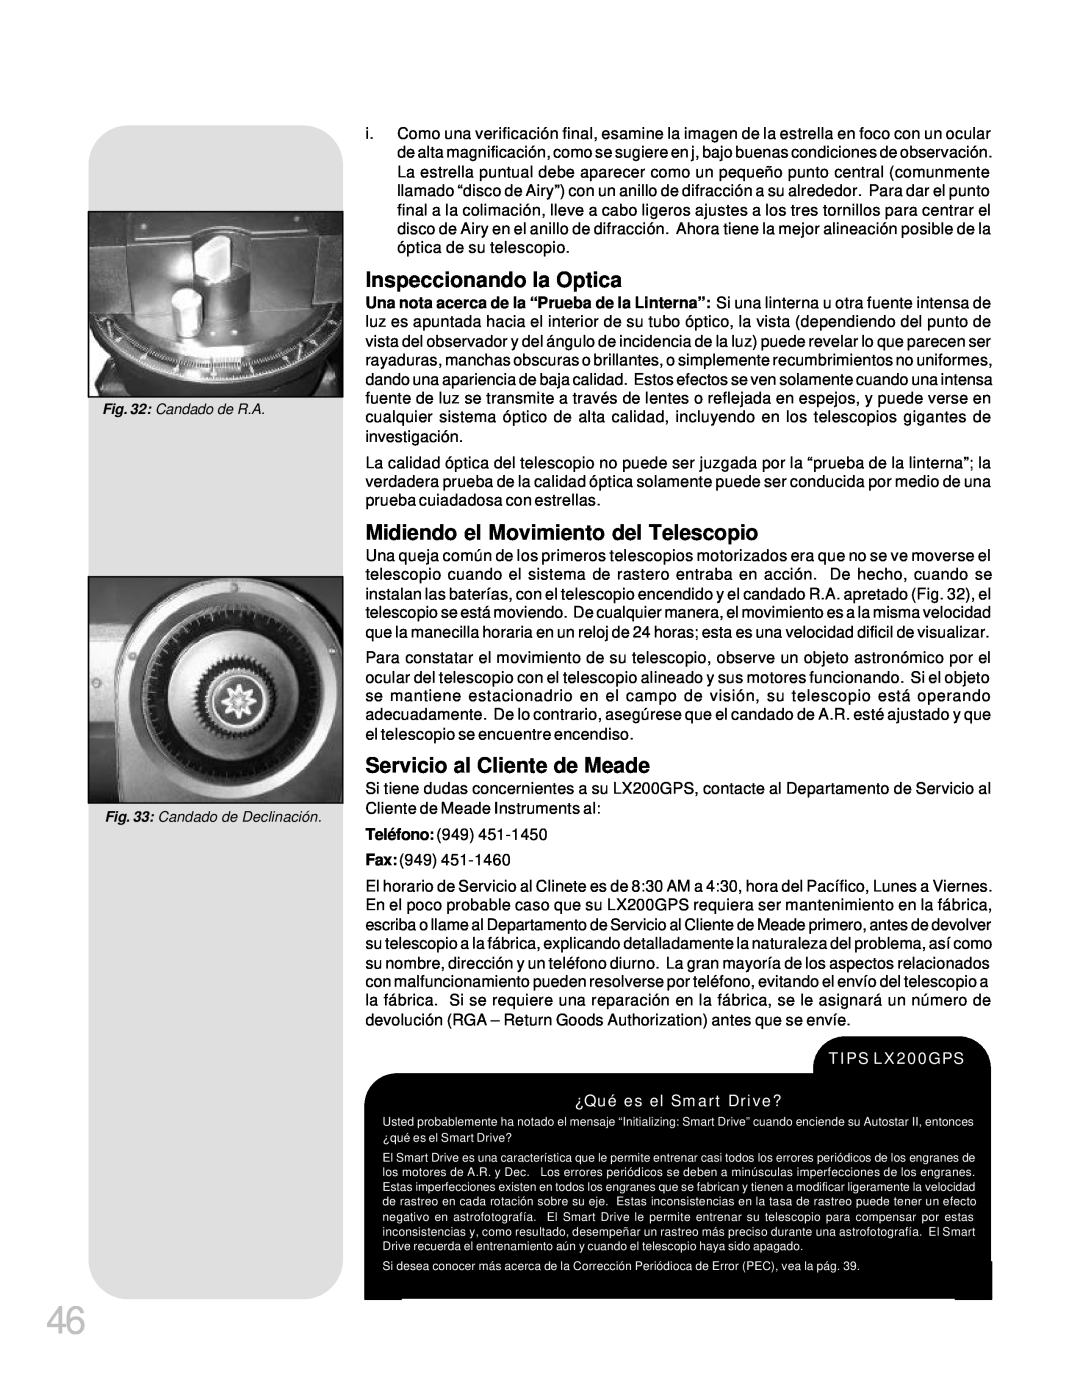 Meade LX200GPS manual Inspeccionando la Optica, Midiendo el Movimiento del Telescopio, Servicio al Cliente de Meade 